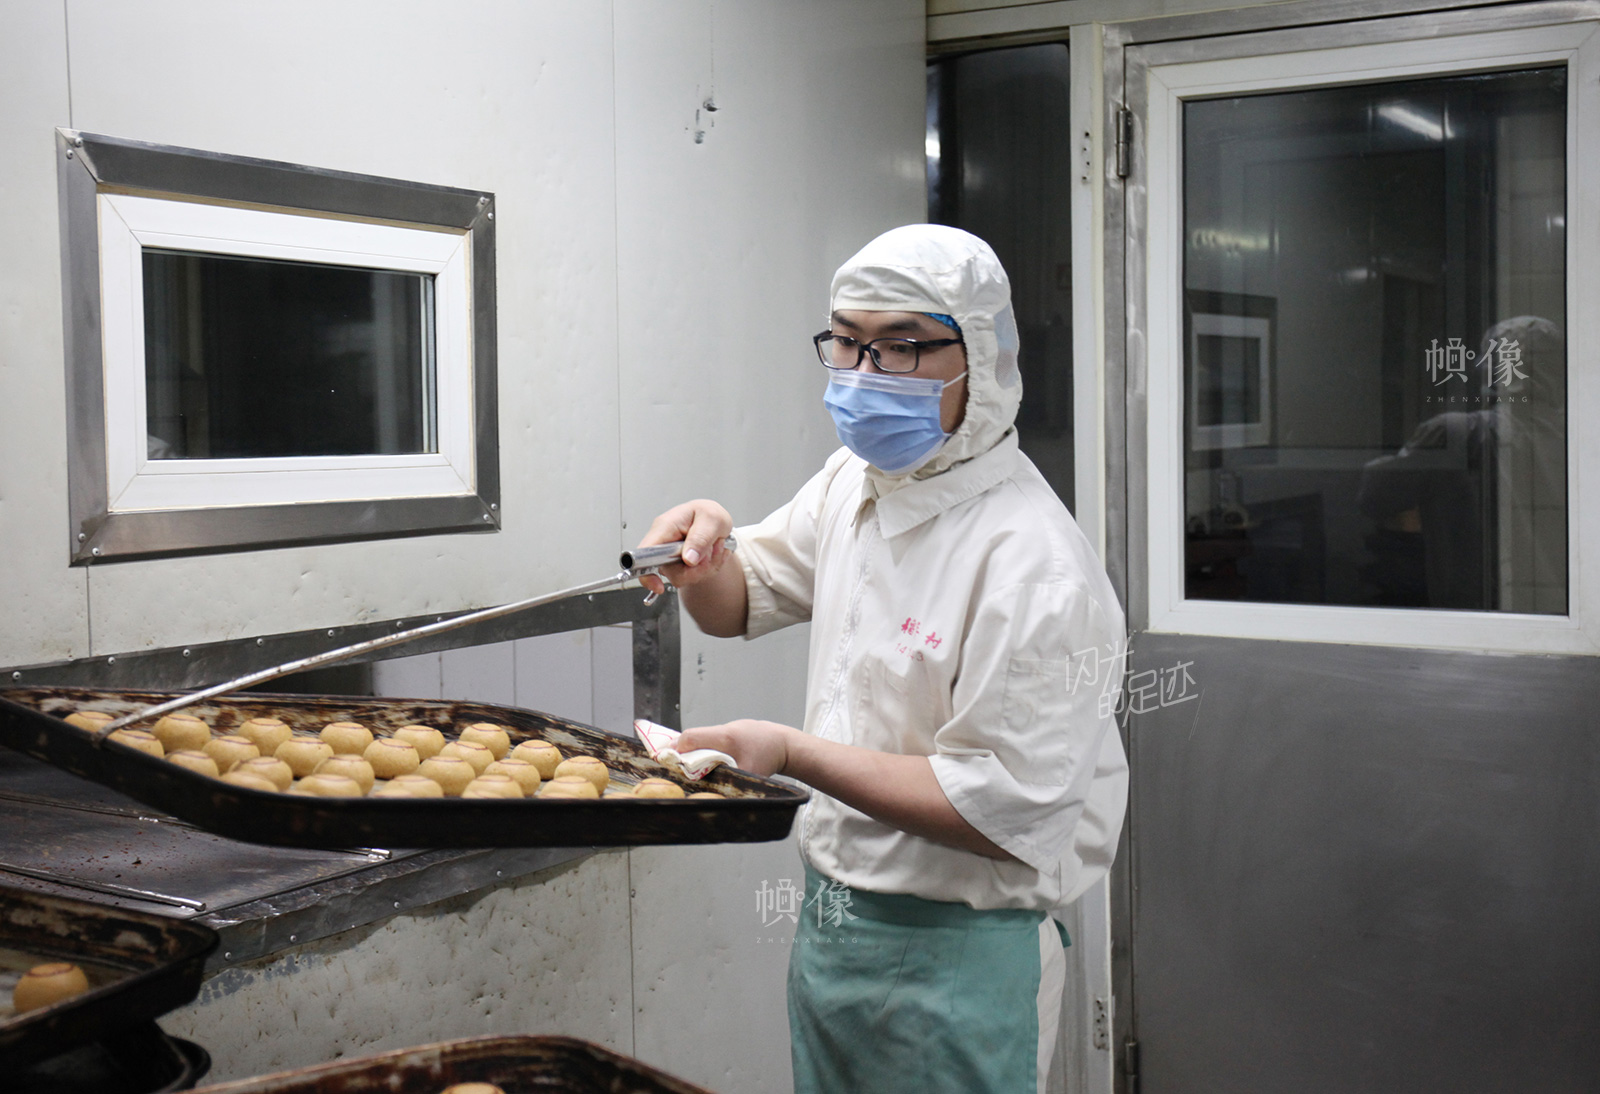 2017年3月2日,北京稻香村生产加工车间,工人正在处理刚出炉的糕点